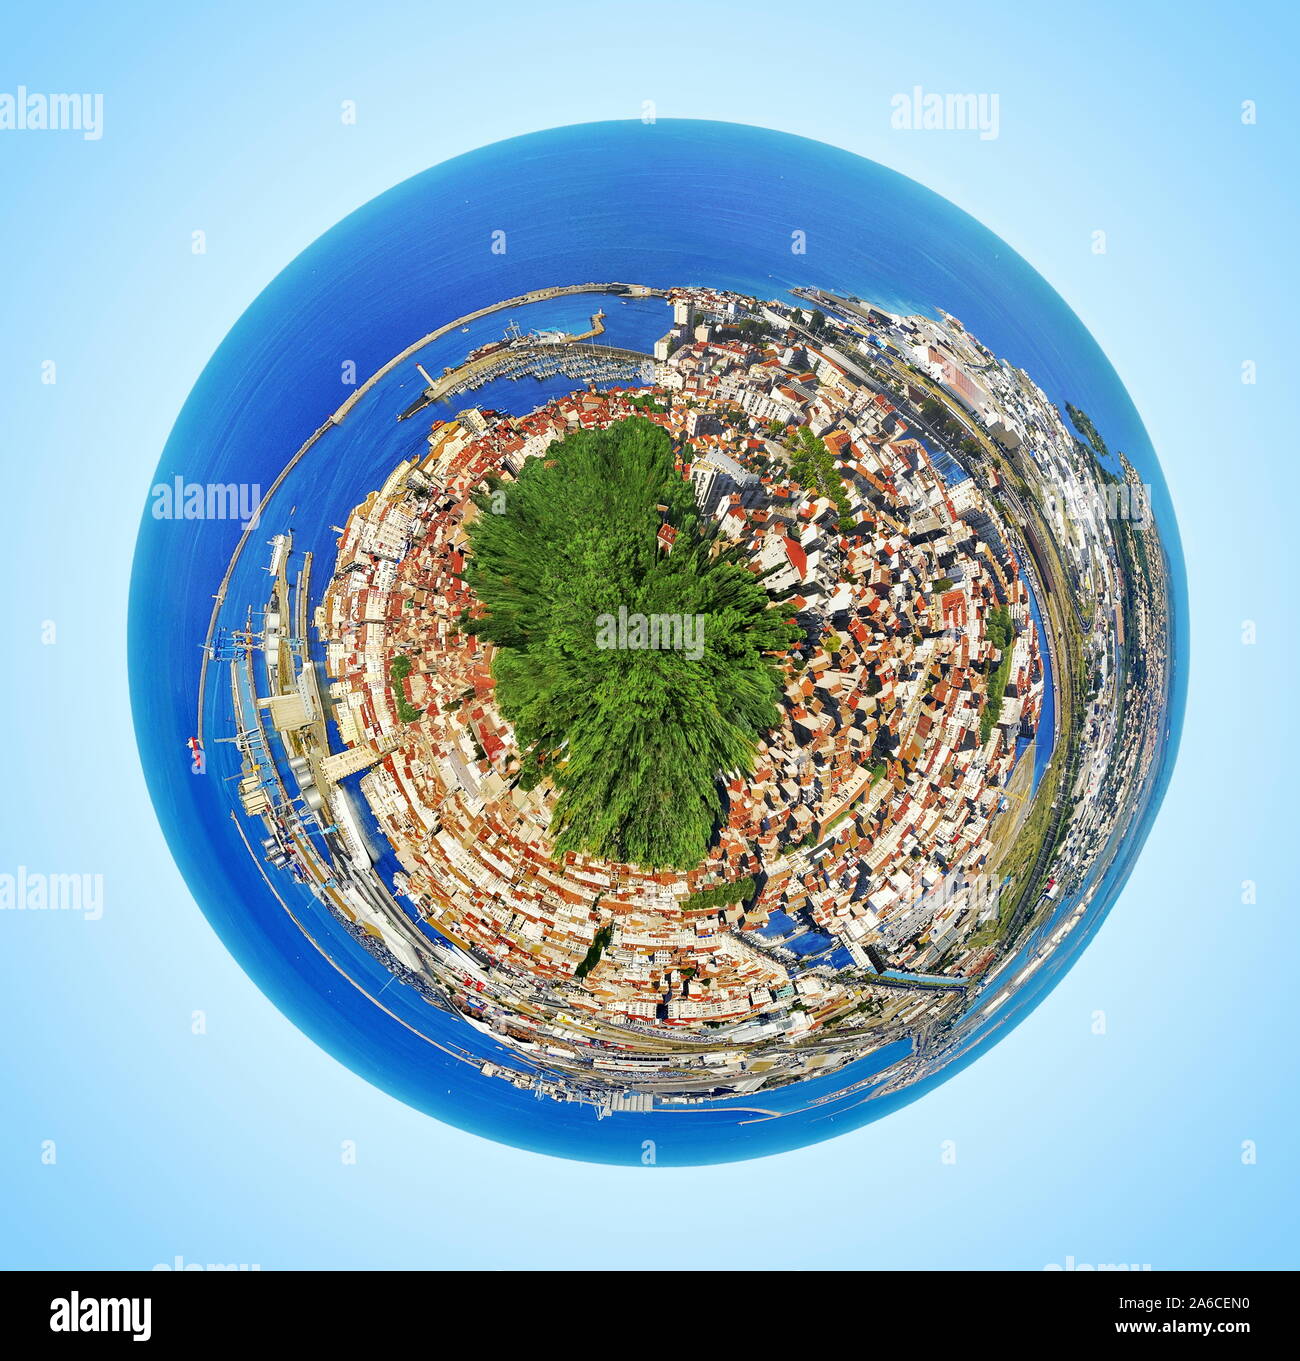 Représentation de l'urbanisation envahissante sur la planète de la vue aérienne d'une ville. Banque D'Images